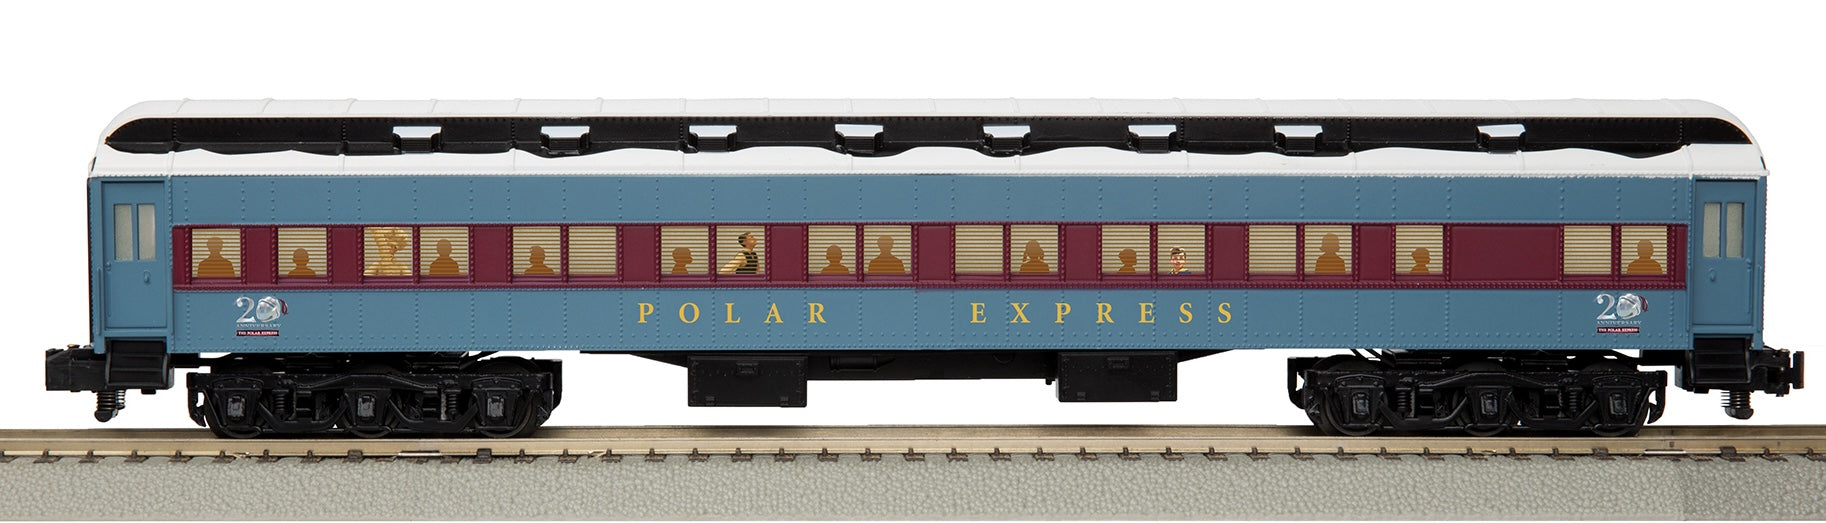 Lionel A/F 2419030 - 20th Anniversary Coach Car "Polar Express" (Add-On)